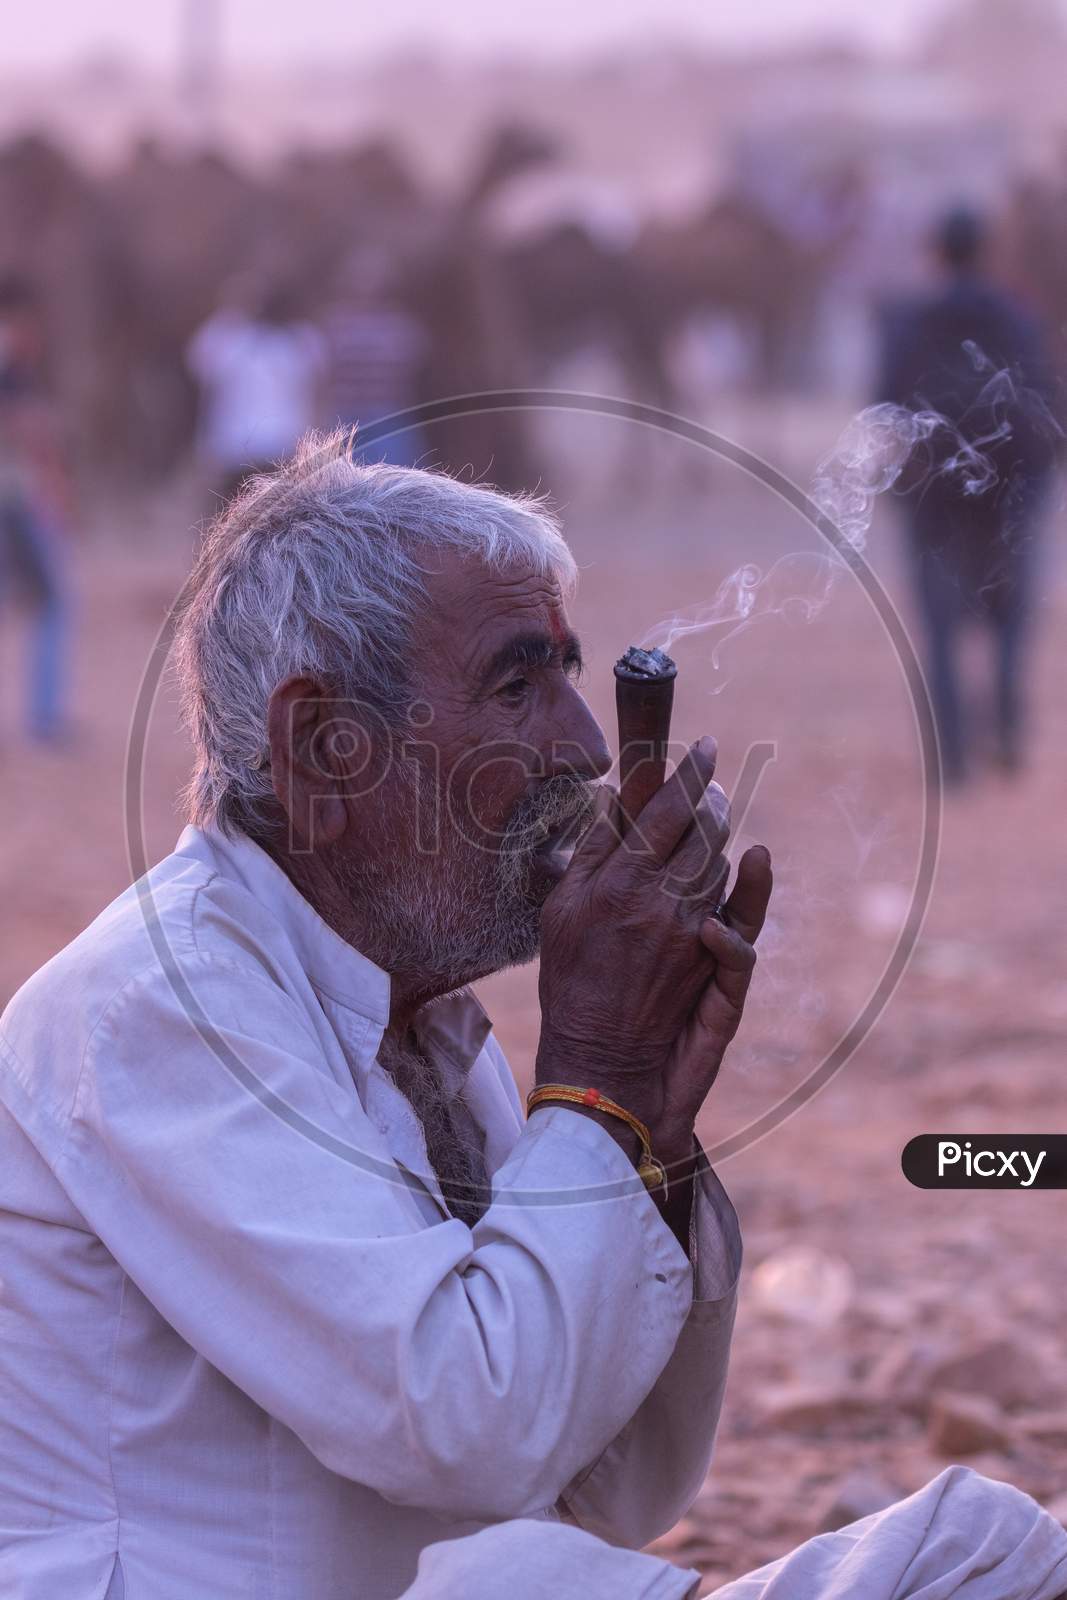 A rural Indian man siting an smoking tobacco inside a pipe at Pushkar, Rajasthan